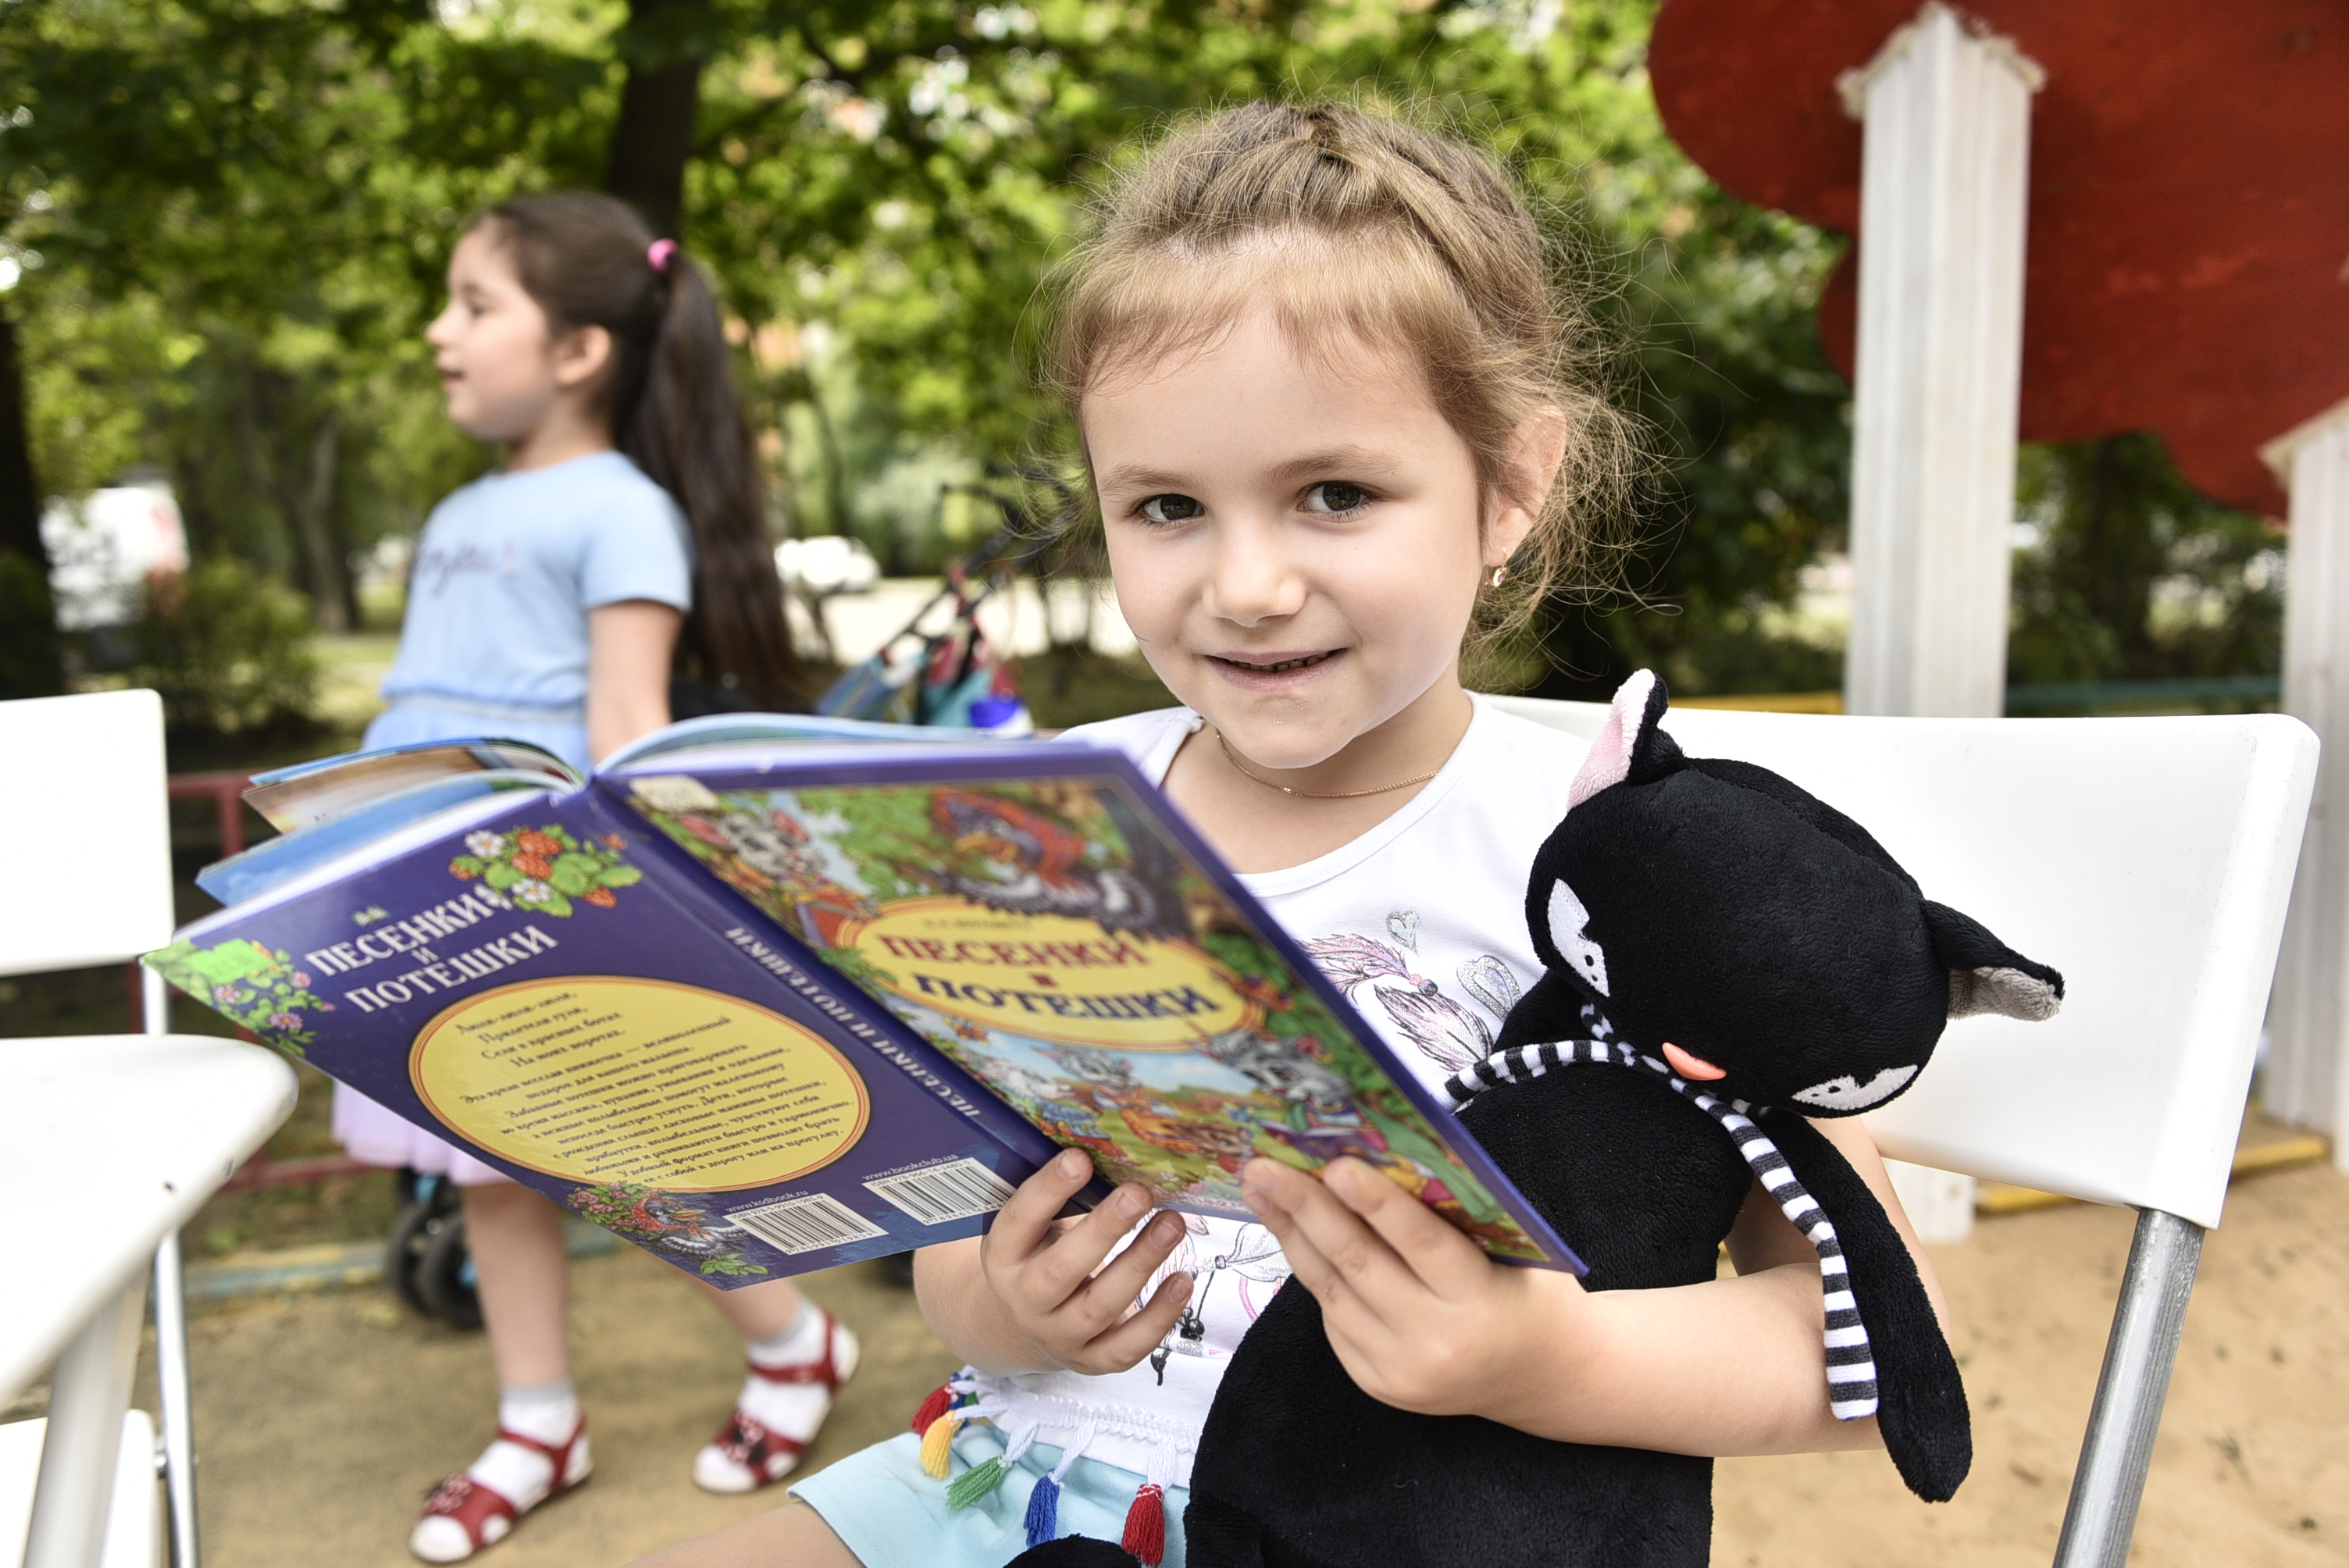 5 августа 2020 года. Участница летней читальни на Каширском, пятилетняя Карина Валуйская, очень любит кошек — и на празднике читала книжку вместе с игрушечным черным котом. Фото: Пелагия Замятина